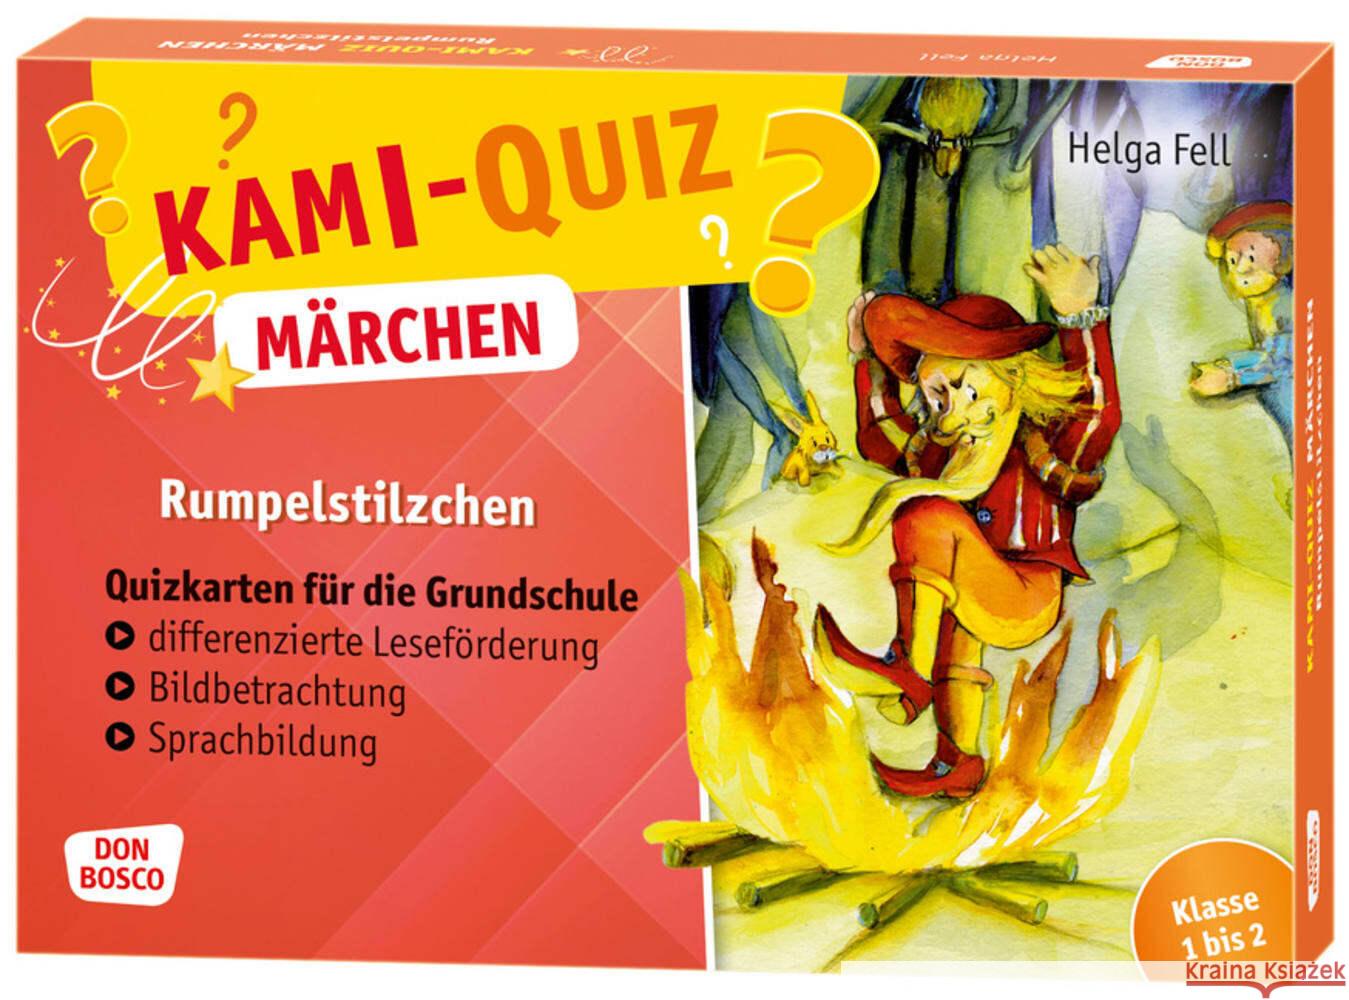 Kami-Quiz Märchen: Rumpelstilzchen Fell, Helga 4260179517419 Don Bosco Medien - książka